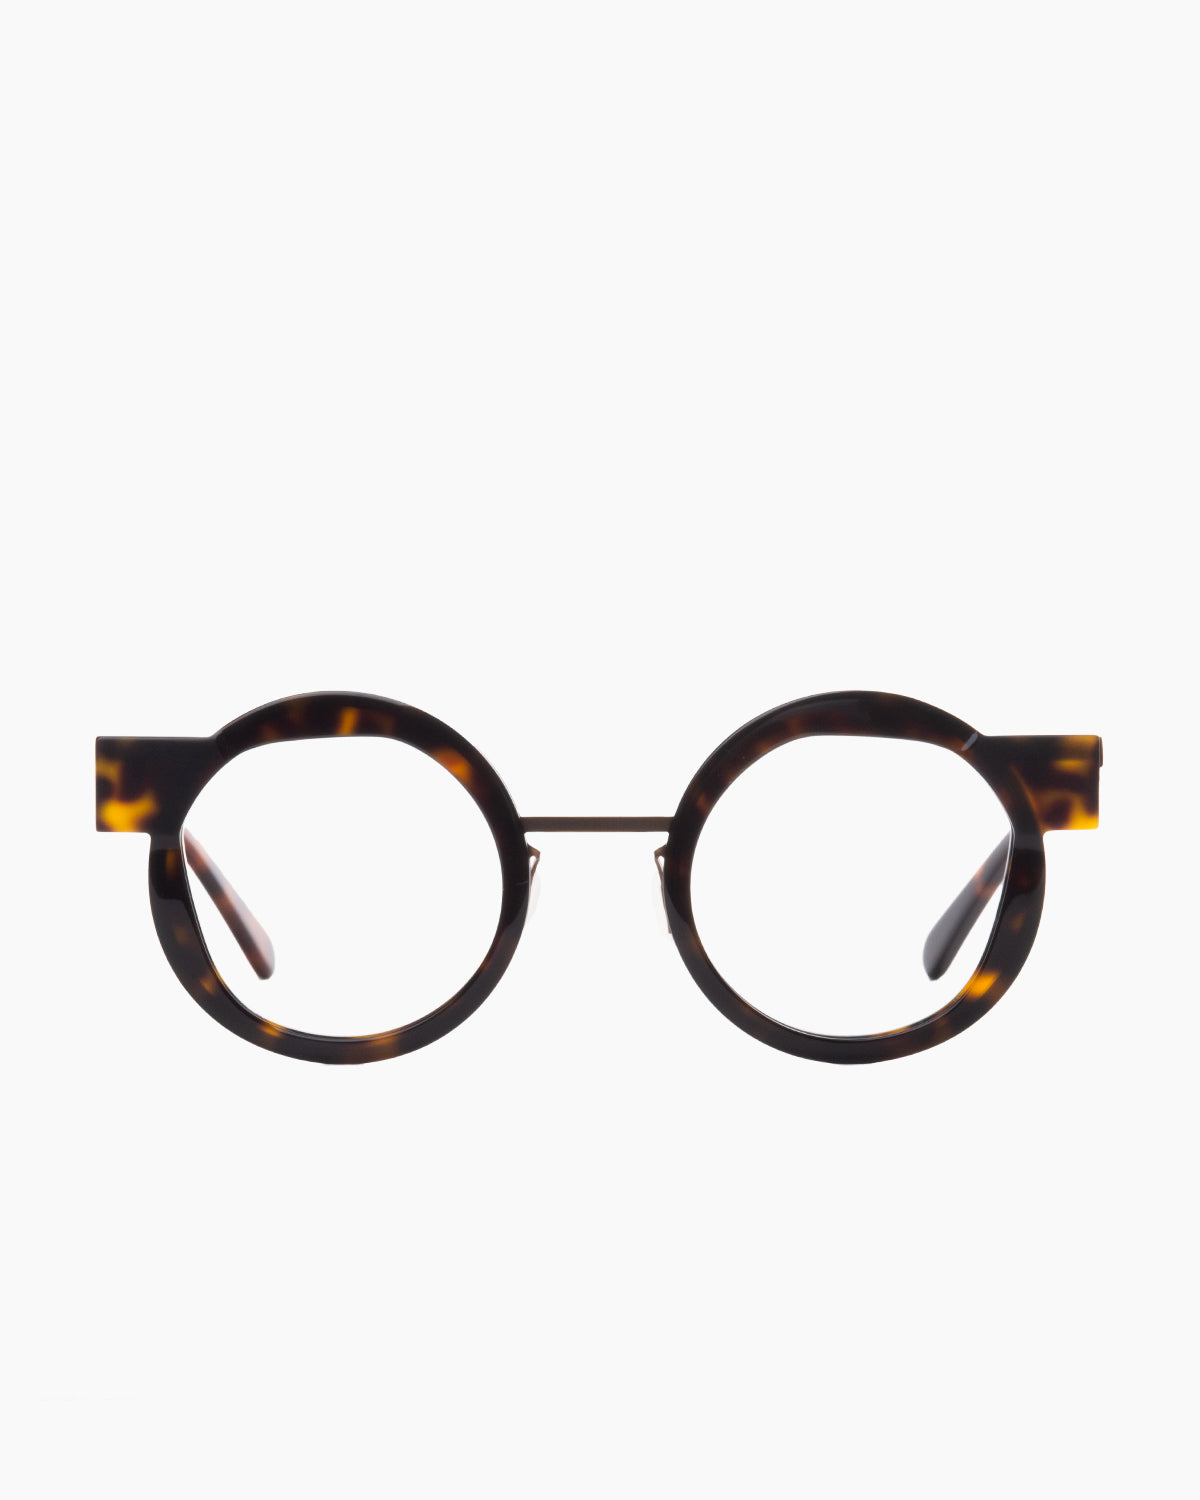 Gamine - VoussoirSödermalm - DarkHavana/copper | Bar à lunettes:  Marie-Sophie Dion